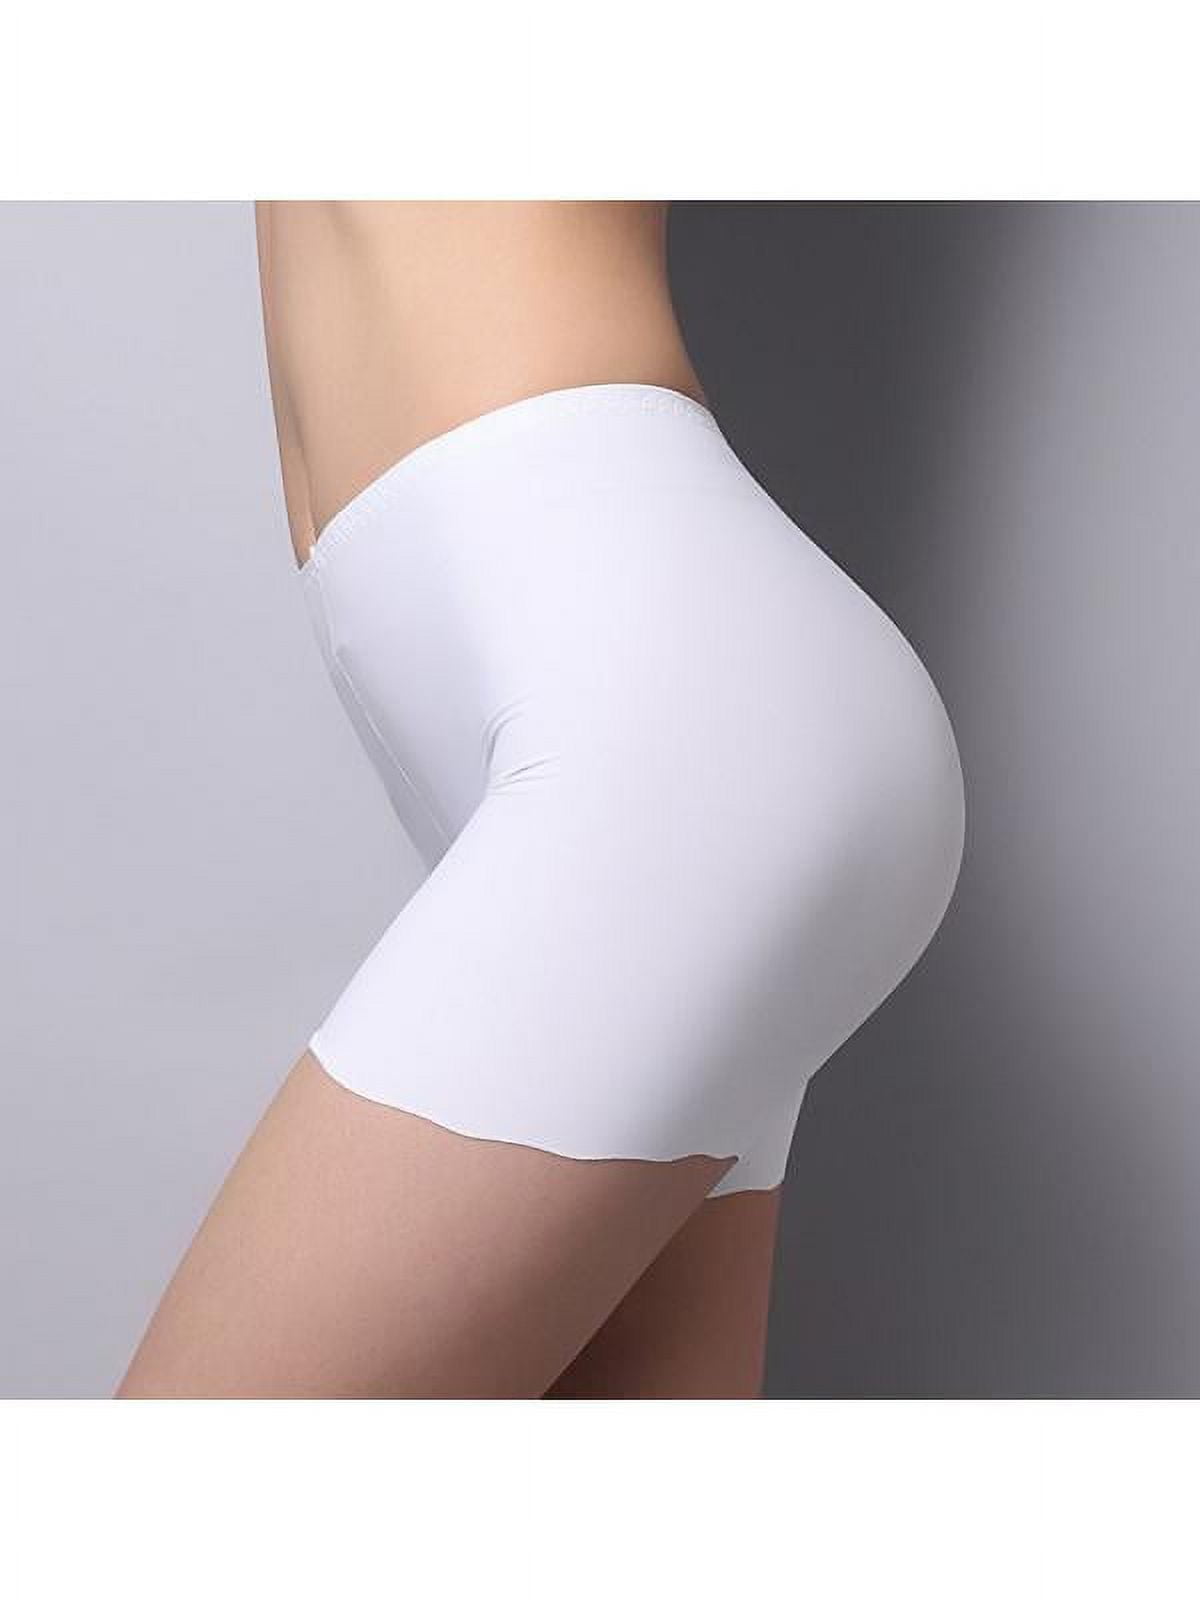 Buy Underwear For Skirt online